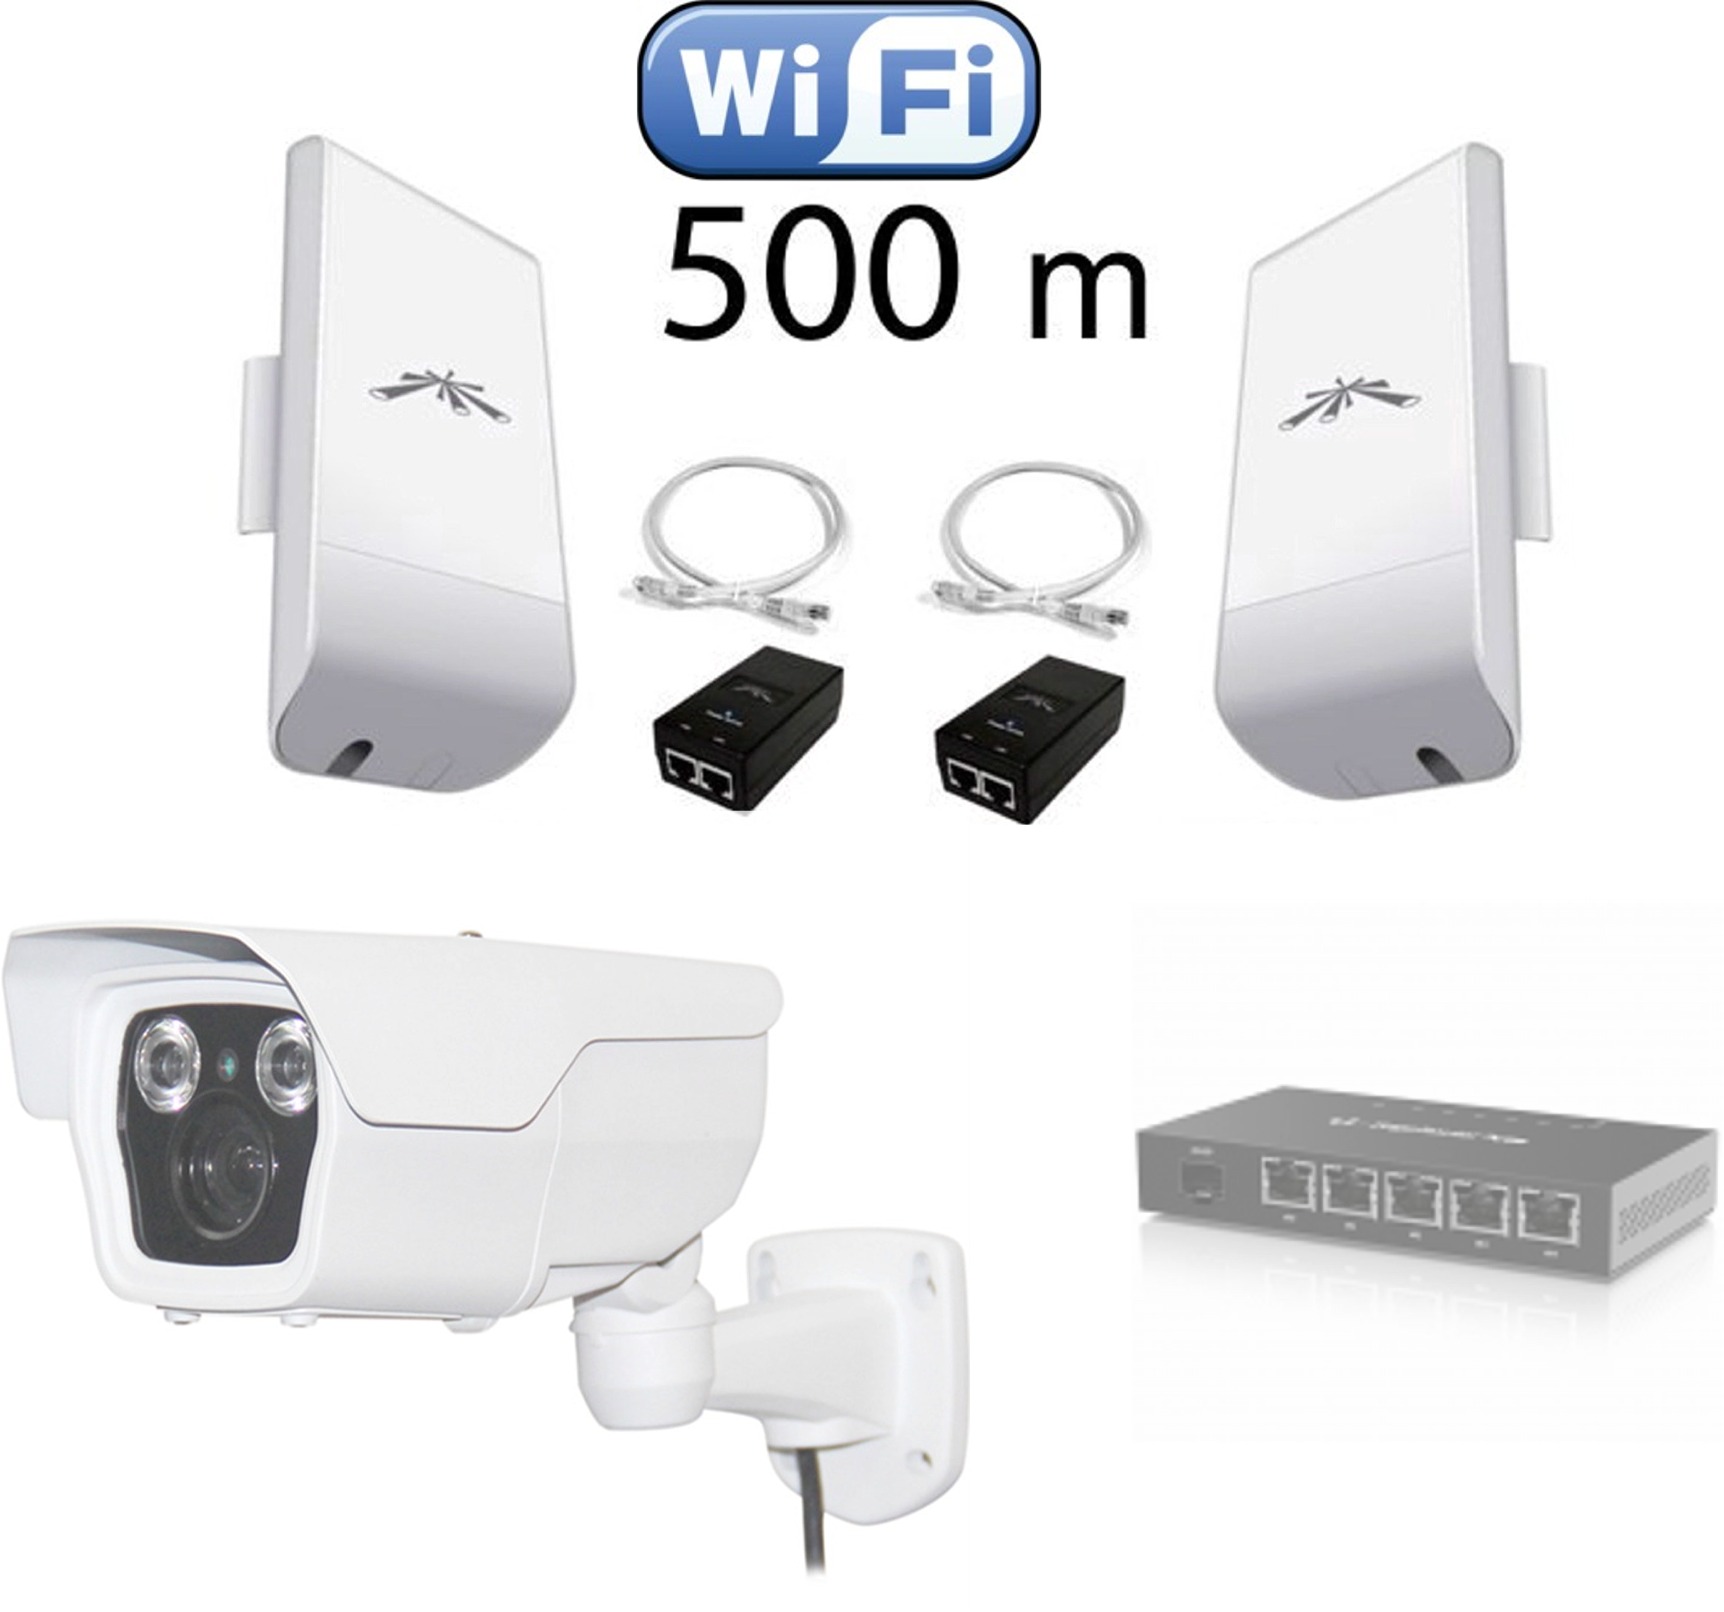 Kit pont WIFI pour caméra exterieure sans fil longue portée 500 mètres à 5  Km Ubiquiti routeur wifi MH2-500 : Alarme videosurveillance 3G 4G chantier,  magasin, bus